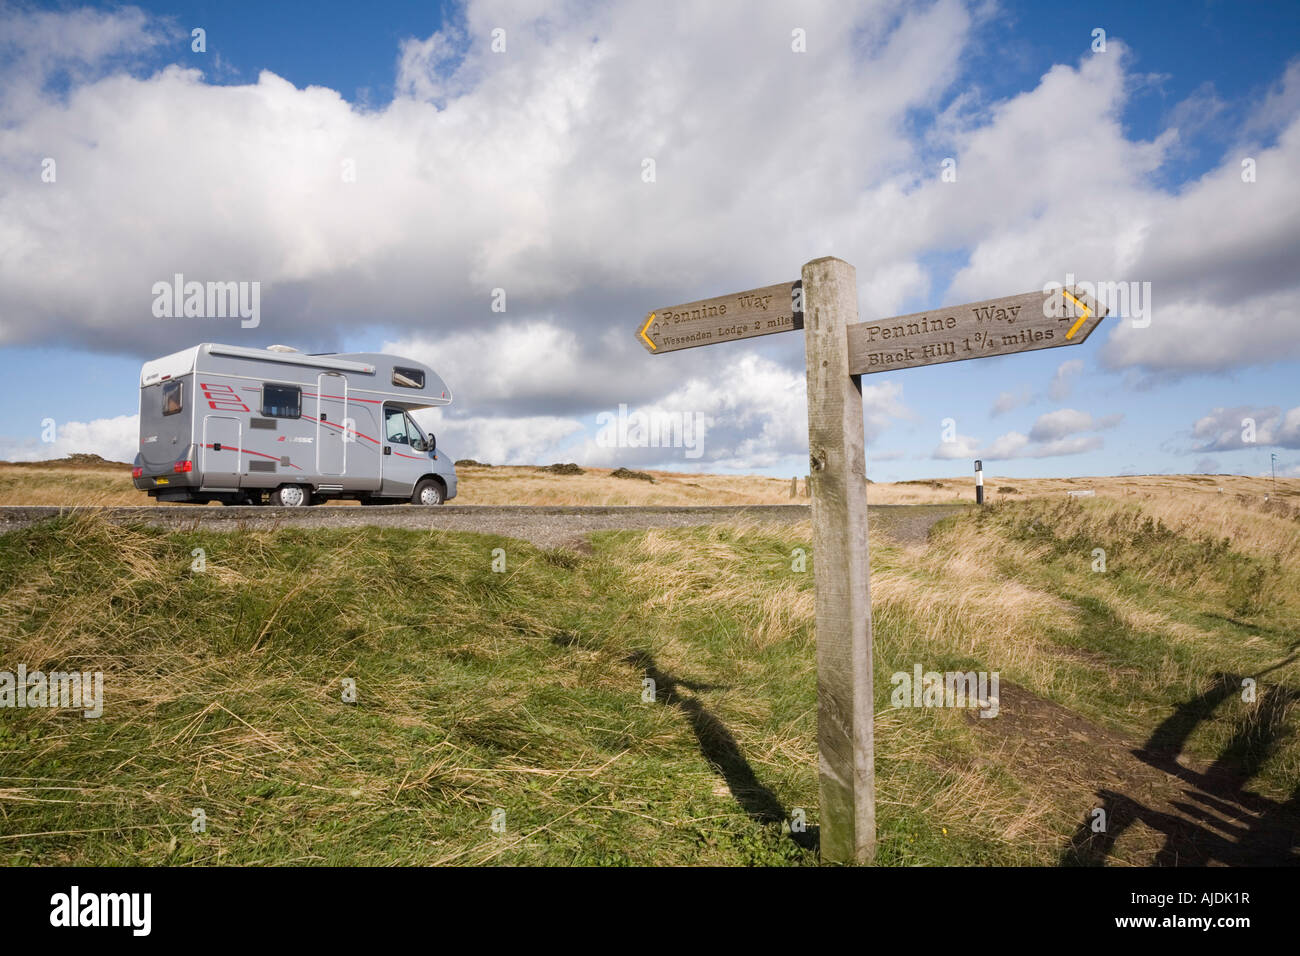 Pennine Way fingerpost signer à côté d'un635 Route avec camping à jeter par dans Parc national de Peak District West Yorkshire Angleterre UK Banque D'Images